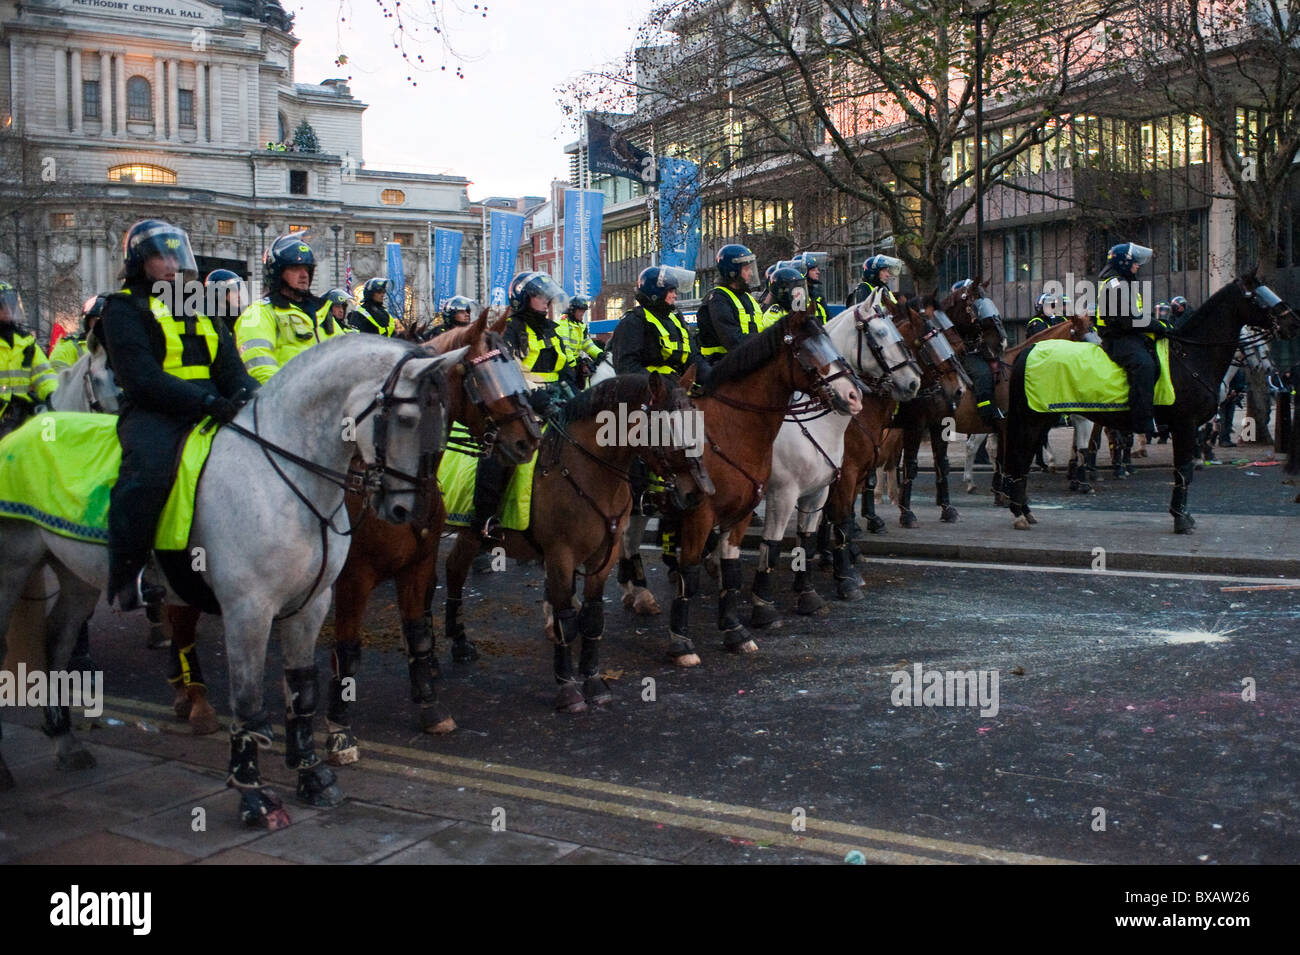 Metropolitanpolizei Pferde im Einsatz während der studentischen Unruhen in London im Jahr 2010. Stockfoto